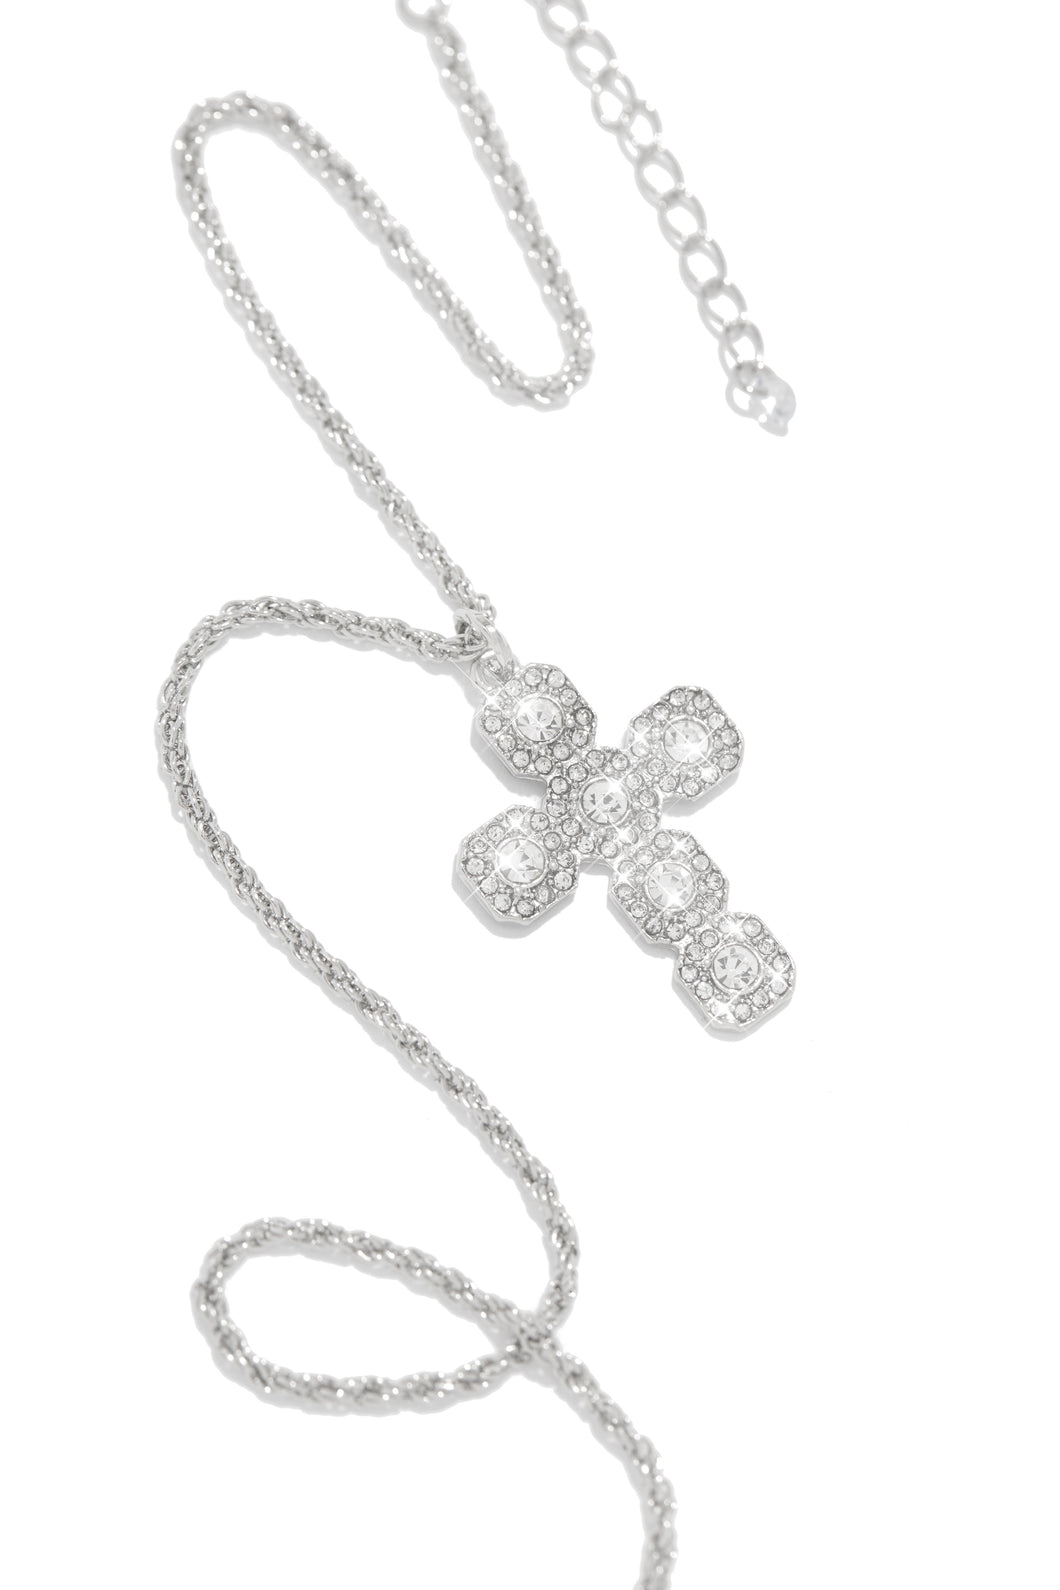 Embellished Silver Necklace